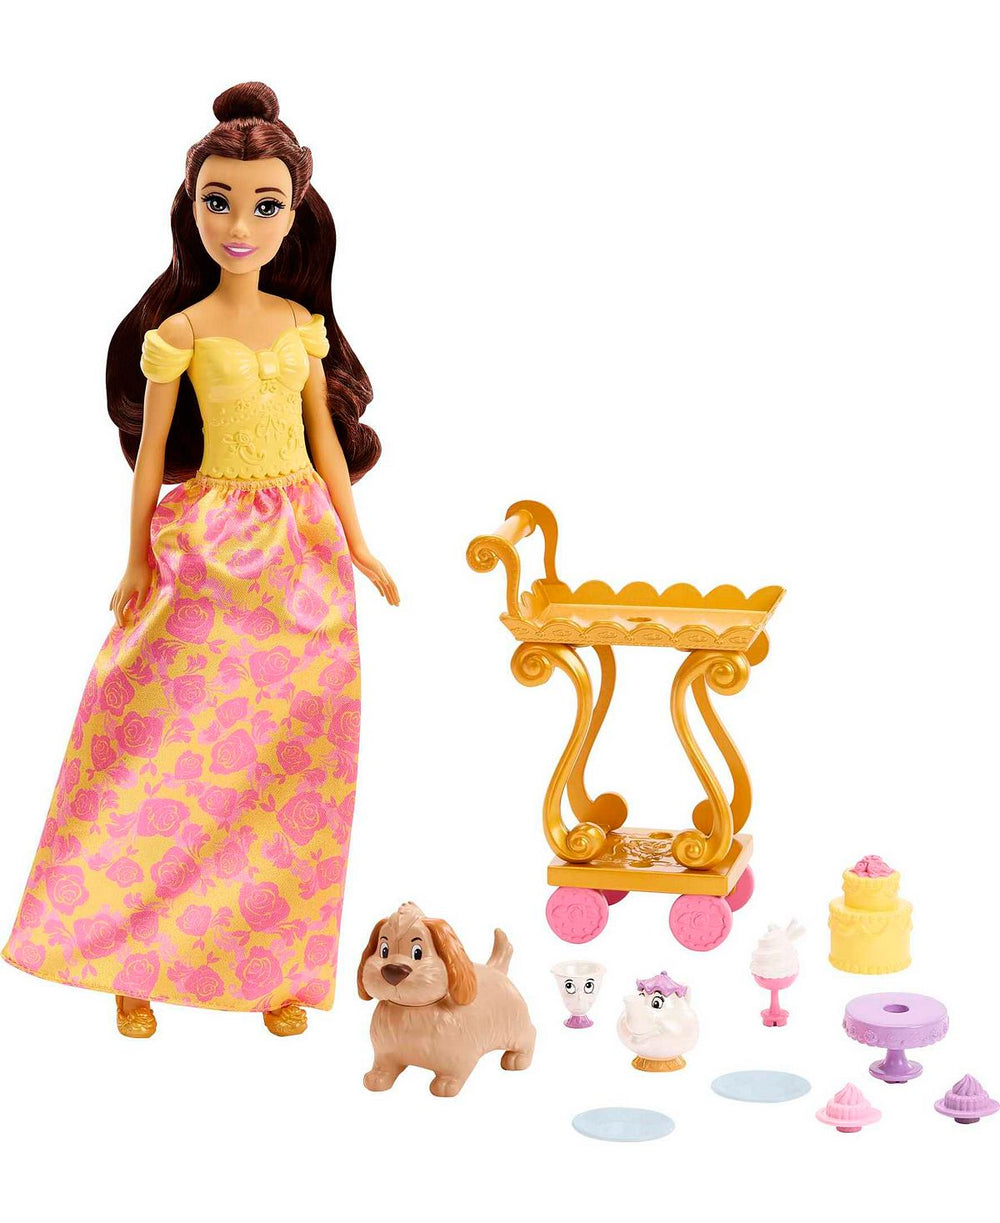 Disney Princess Belle's Enchanted Tea Time Cart Playset